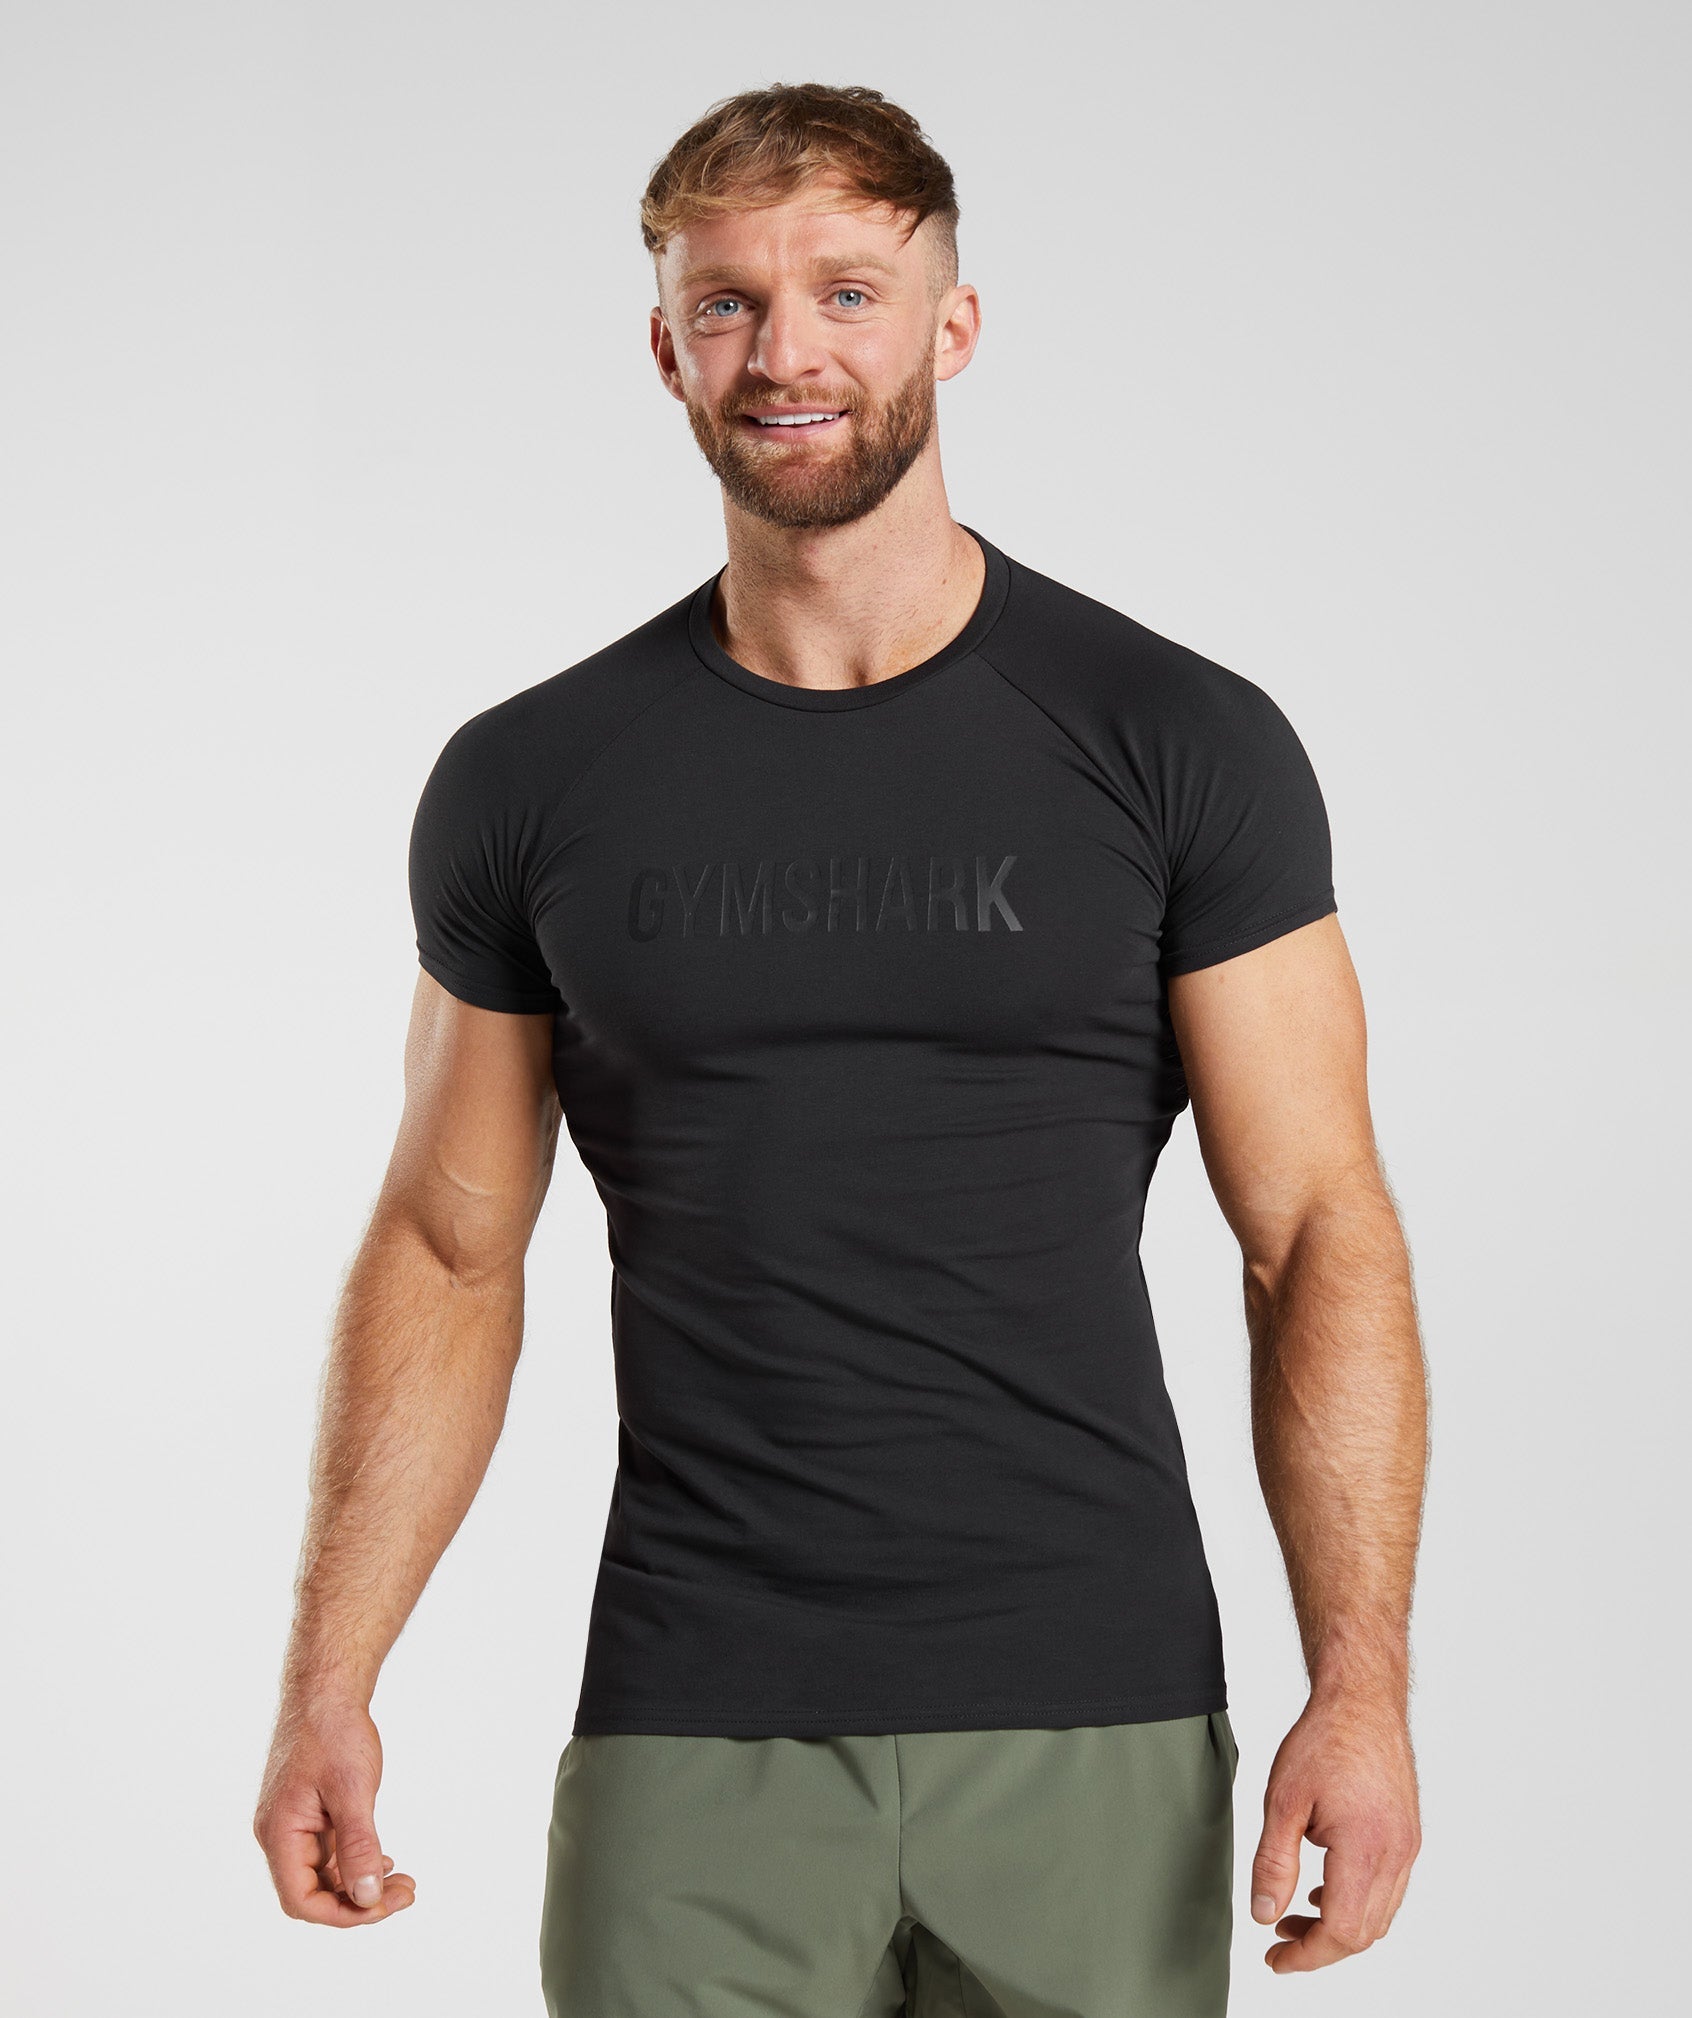 Apollo T-Shirt in Black